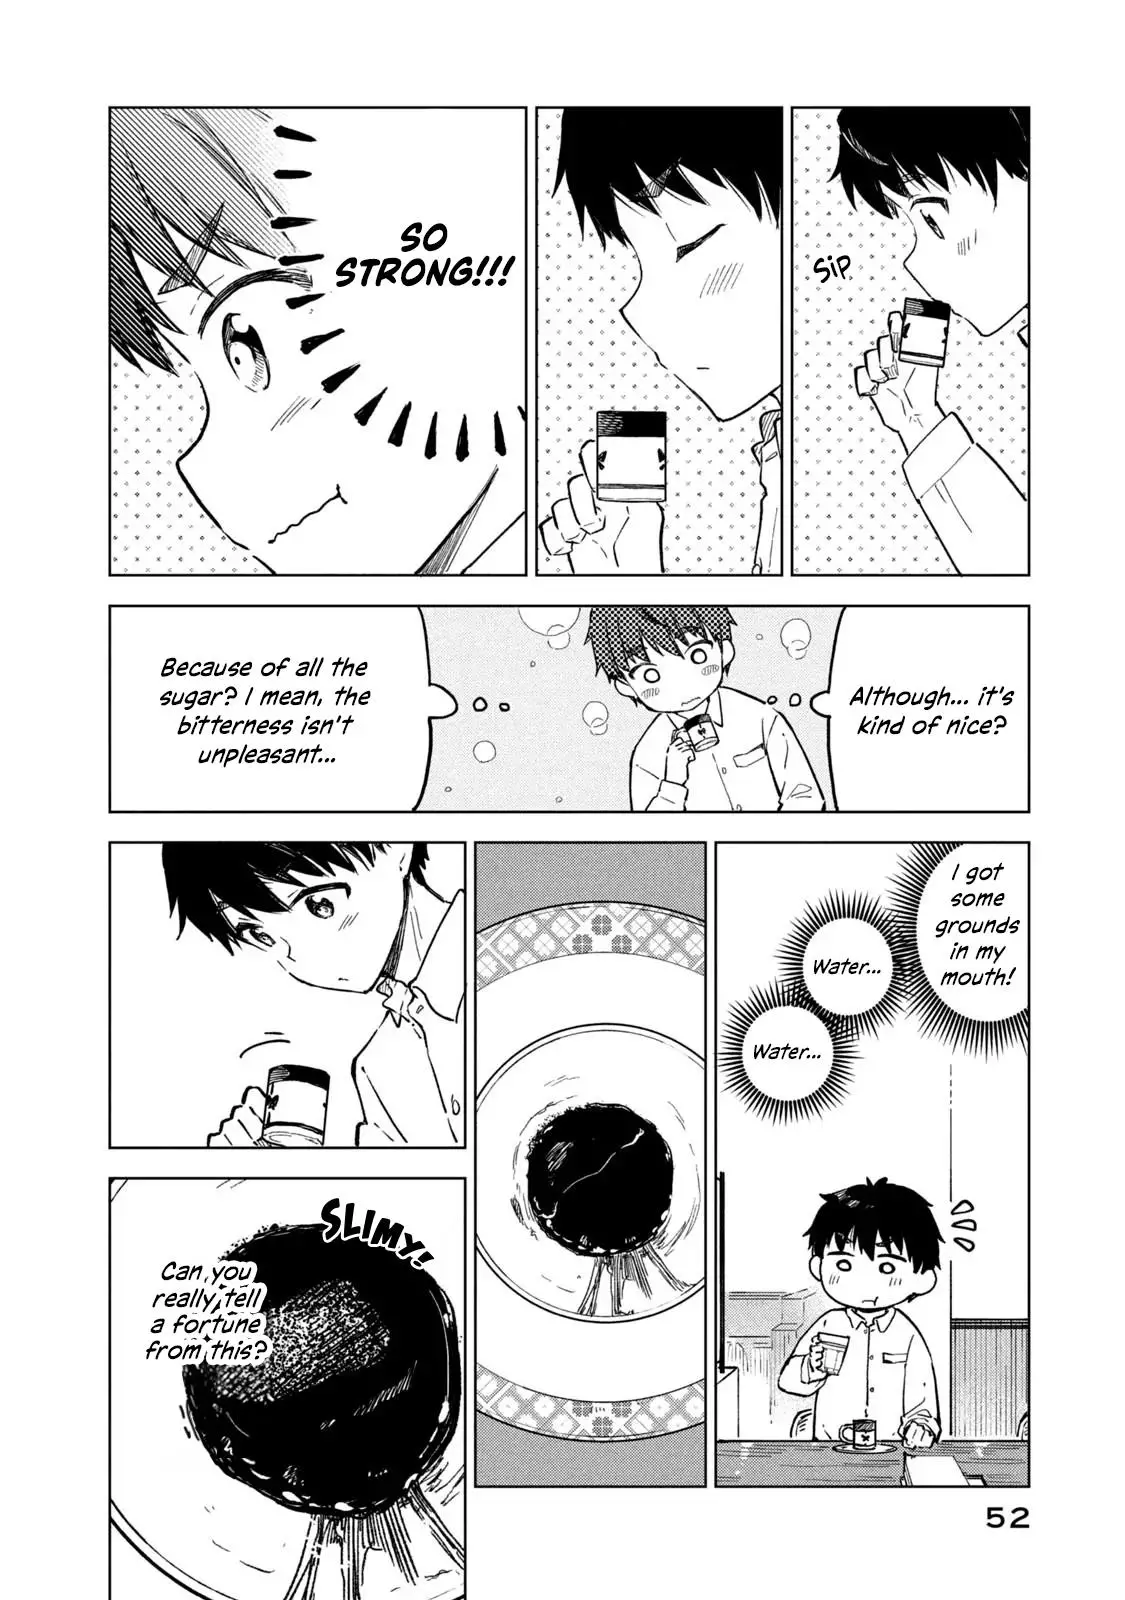 Coffee Wo Shizuka Ni - 14 page 16-6716bed5